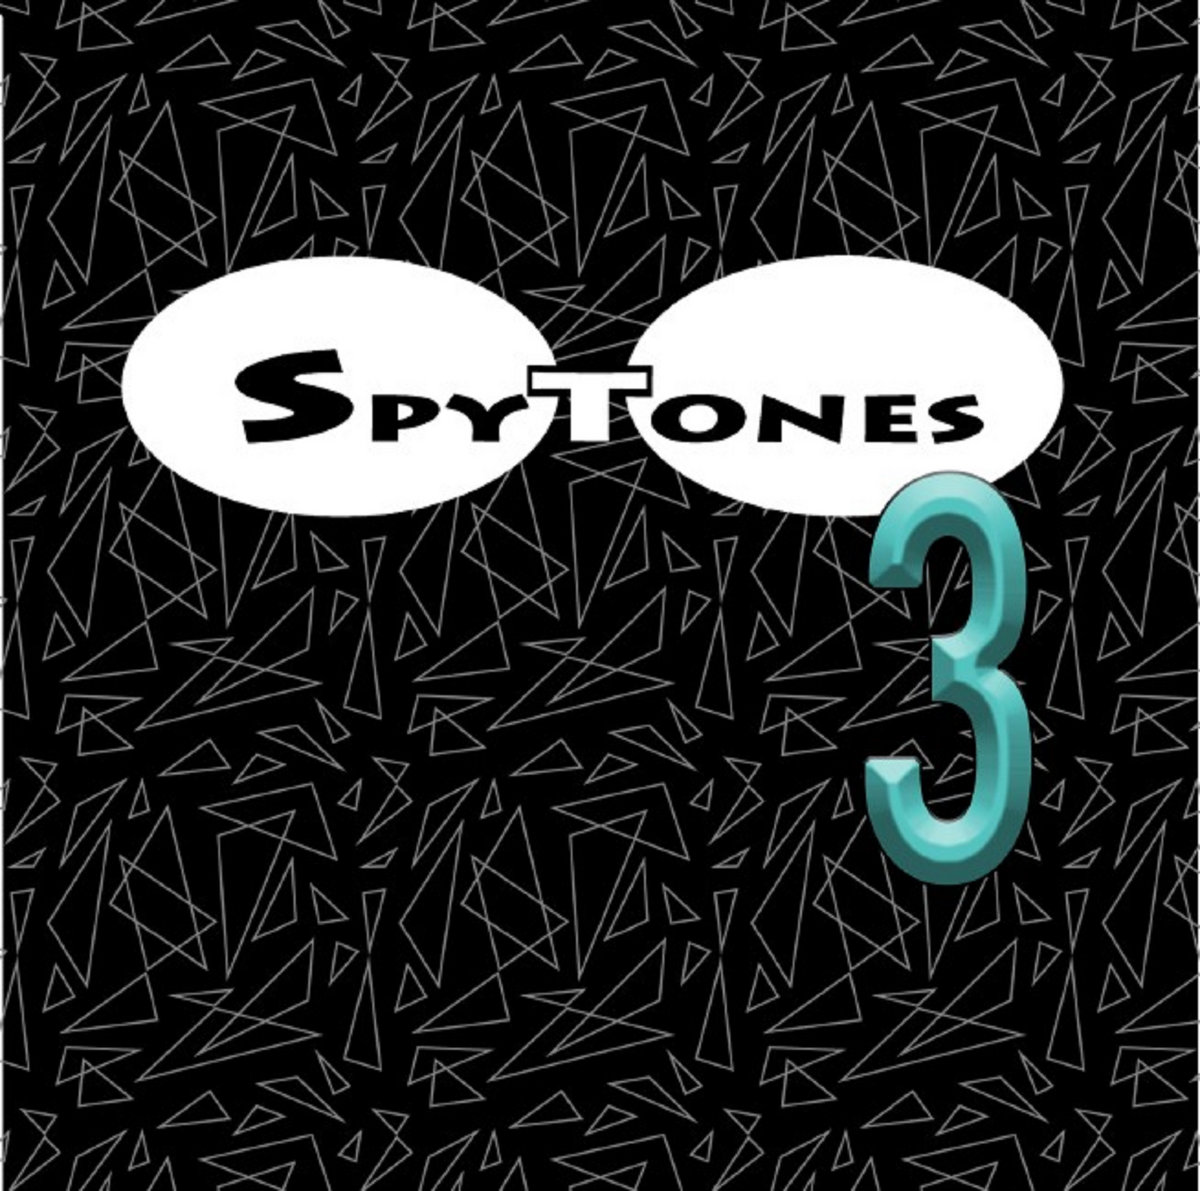 Spytones 3